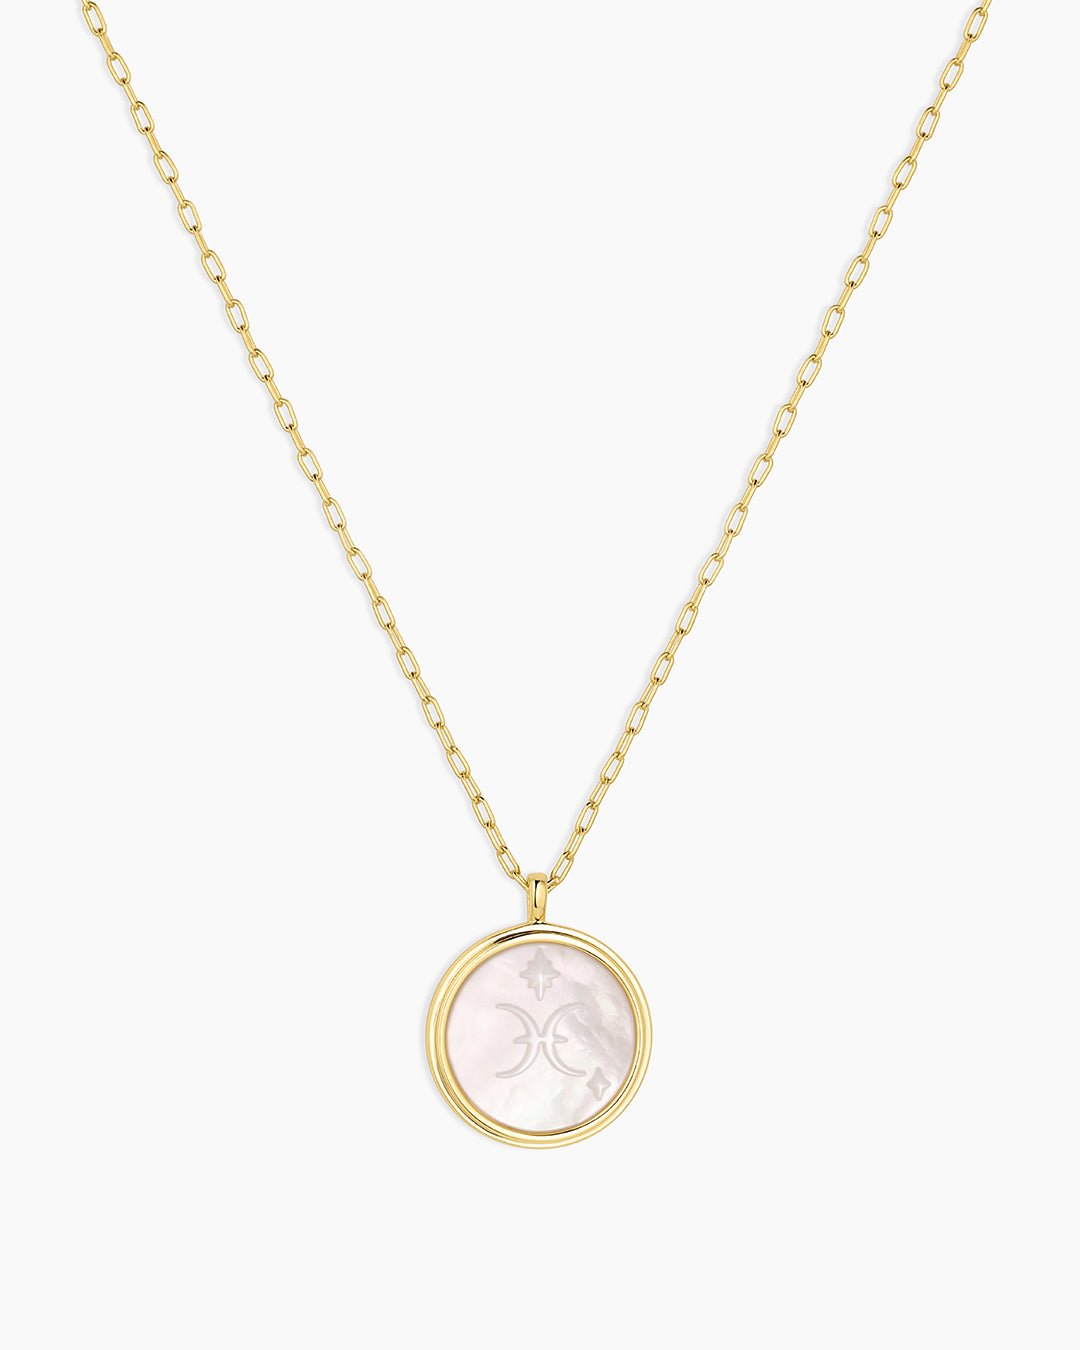 Zodiac Necklace - Aquarius, Astrology Coin Necklace, Aquarius Necklace || option::Gold Plated, Pisces